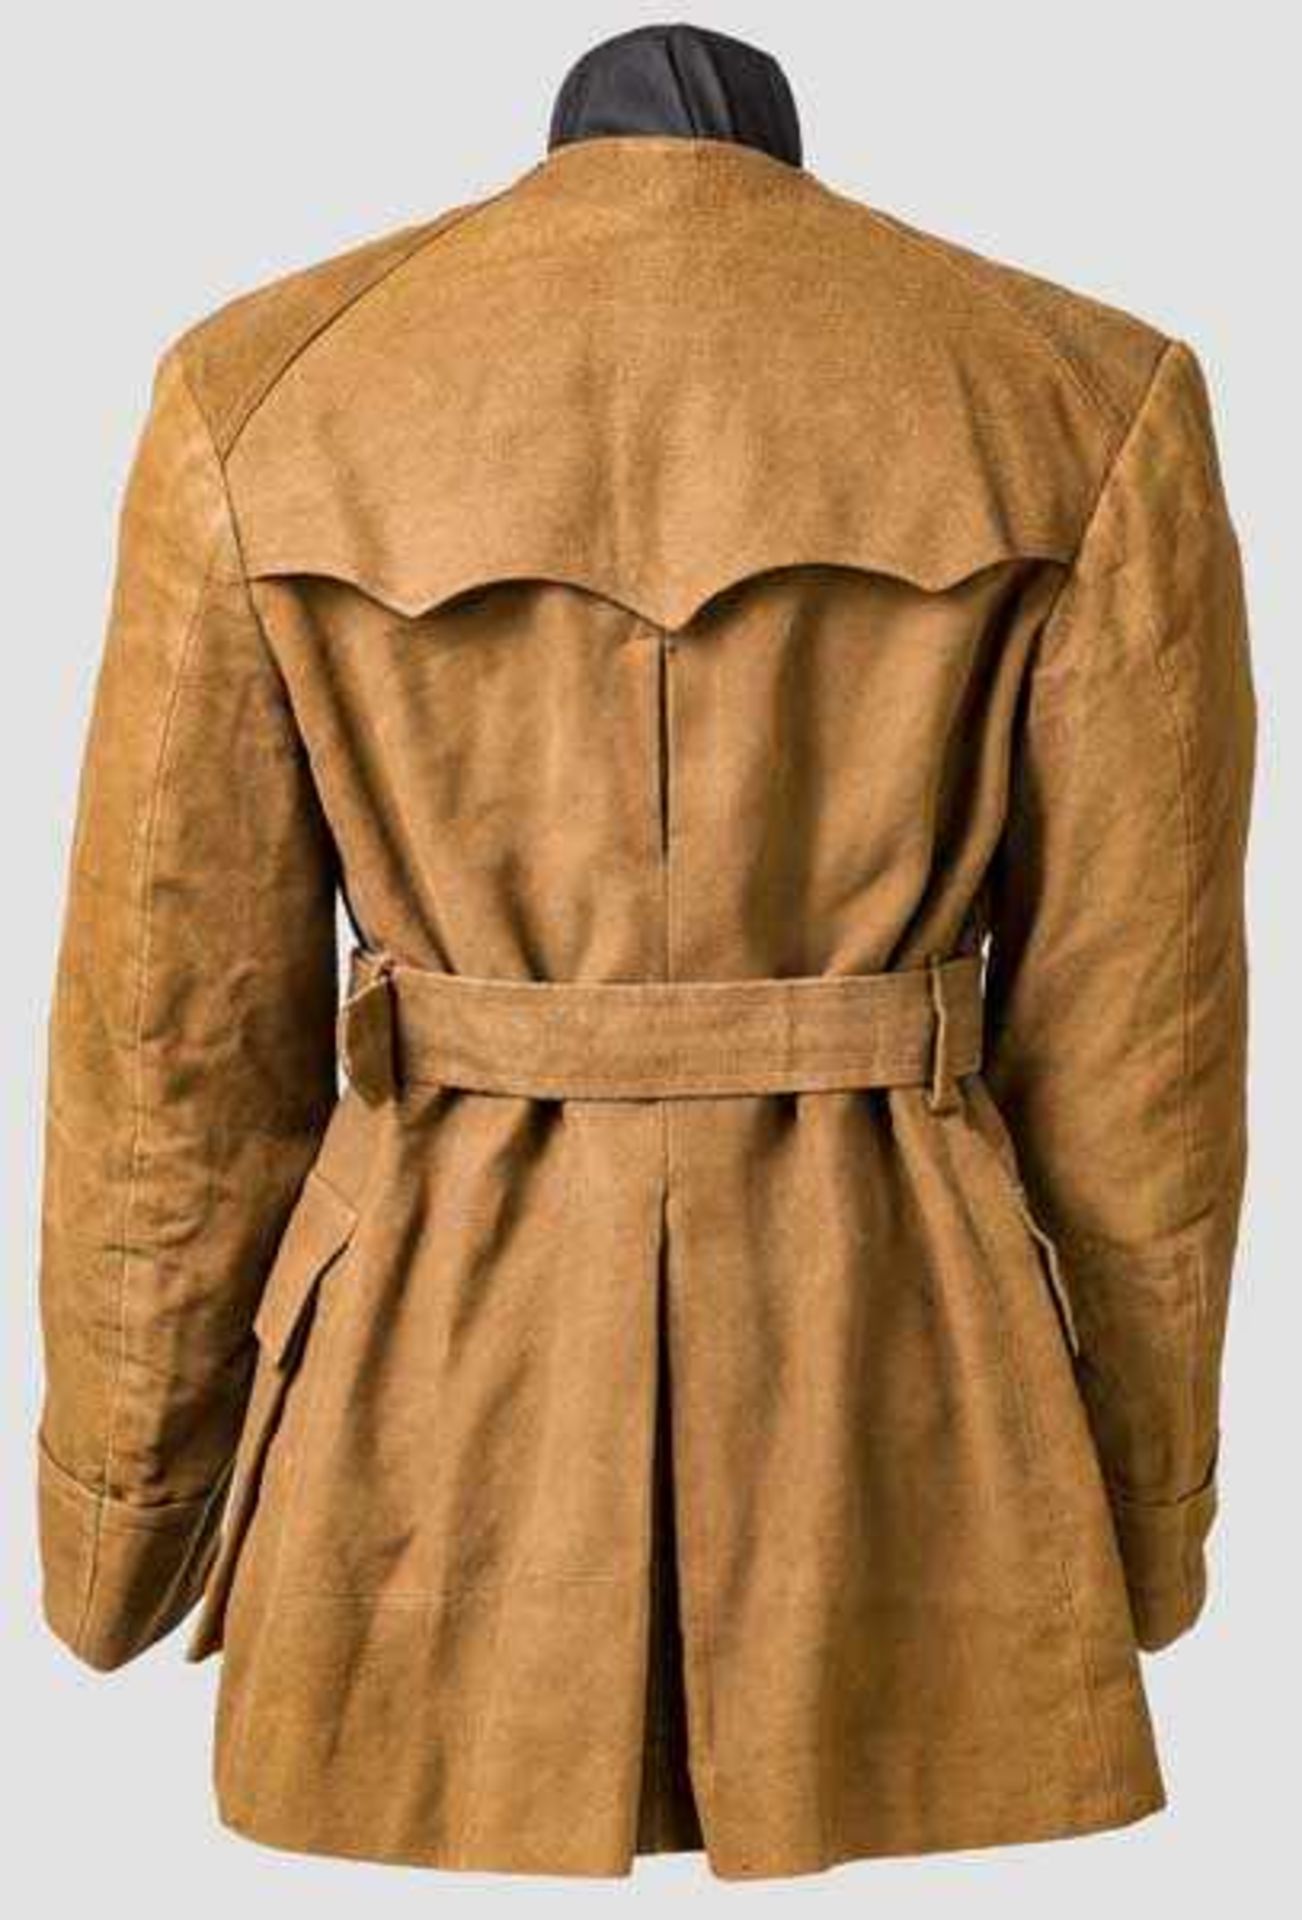 Jacke eines Angehörigen der Partisanenbewegung CLN um 1944 Braunes aufgerautes Tuch, vier Taschen, - Bild 2 aus 3